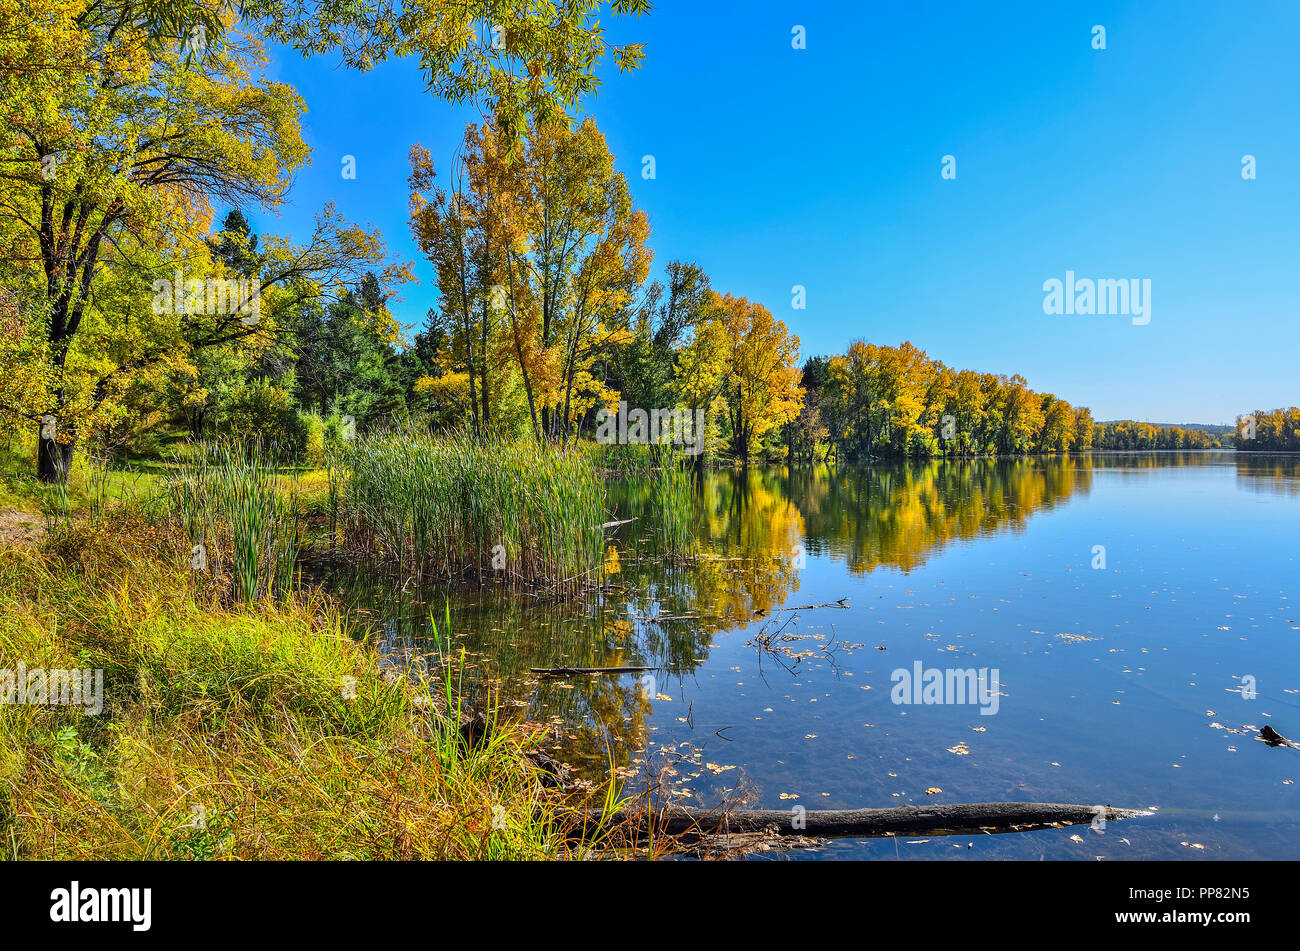 Goldene Herbst Laub von Bäumen in der Nähe des Sees in blauem Wasser spiegelt - Herbst malerische Landschaft an warmen und sonnigen September wetter mit strahlend blauem Himmel Stockfoto